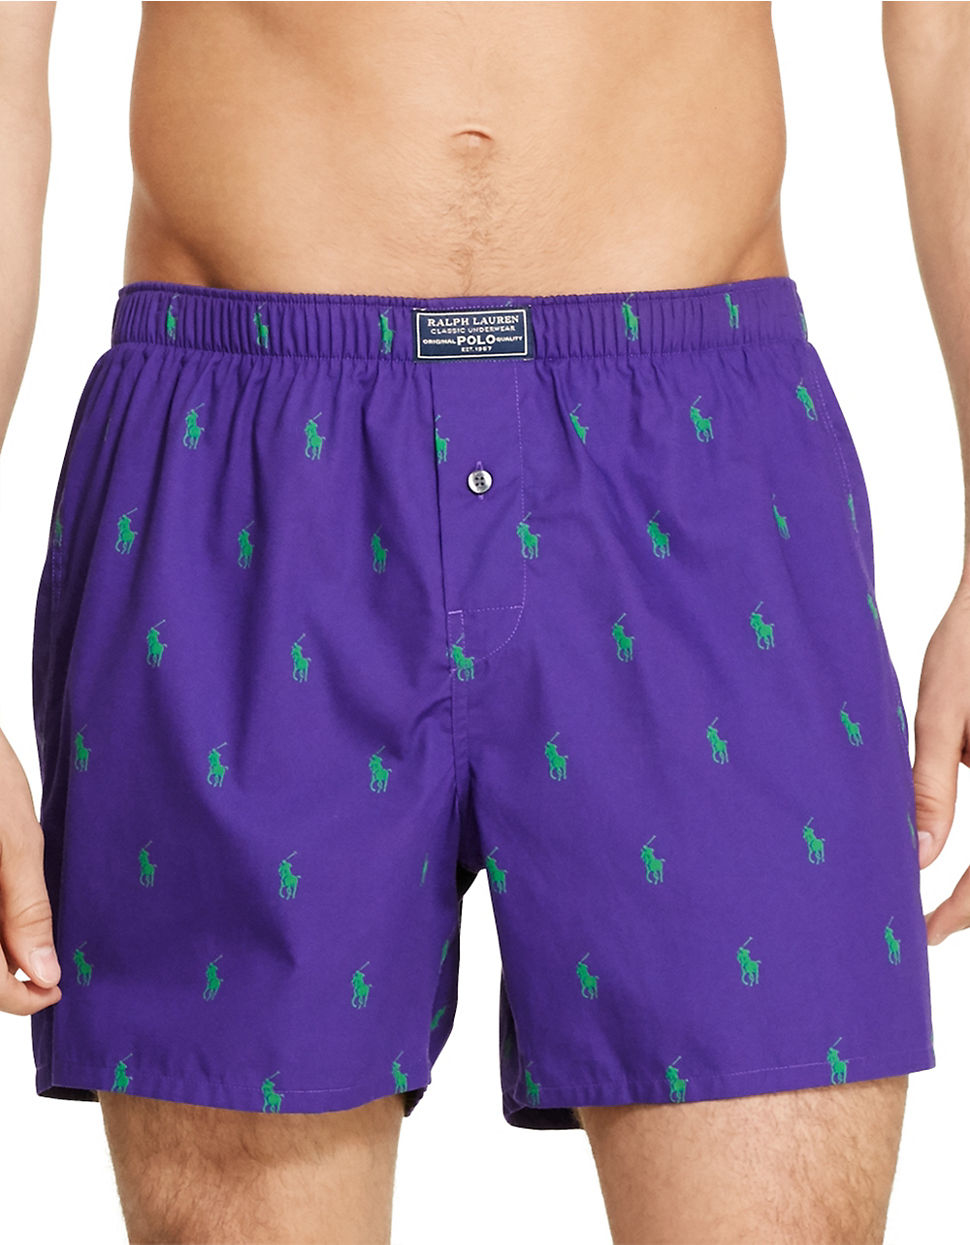 Polo Ralph Lauren Cotton Boxer Shorts in Purple for Men - Lyst